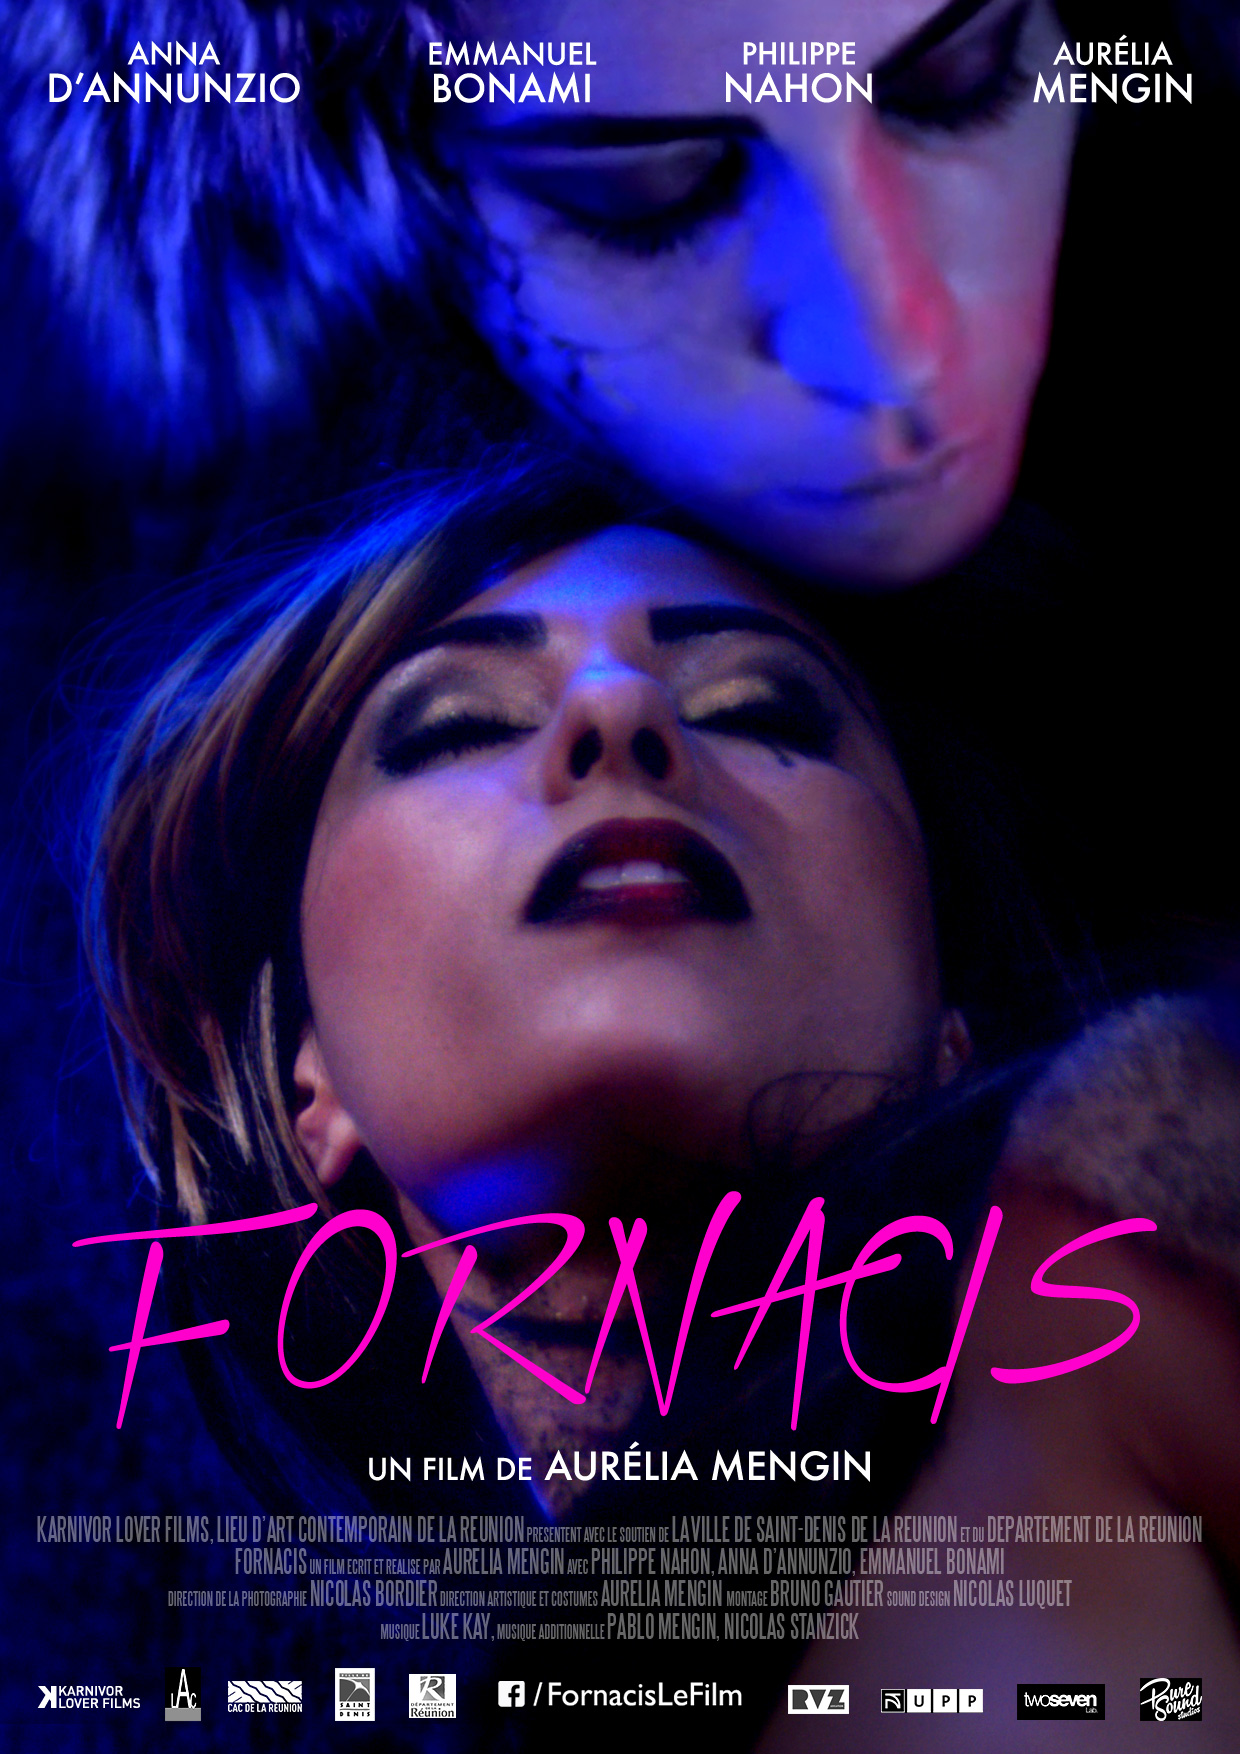 L'affiche de "Fornacis", un film qui va faire le tour du monde